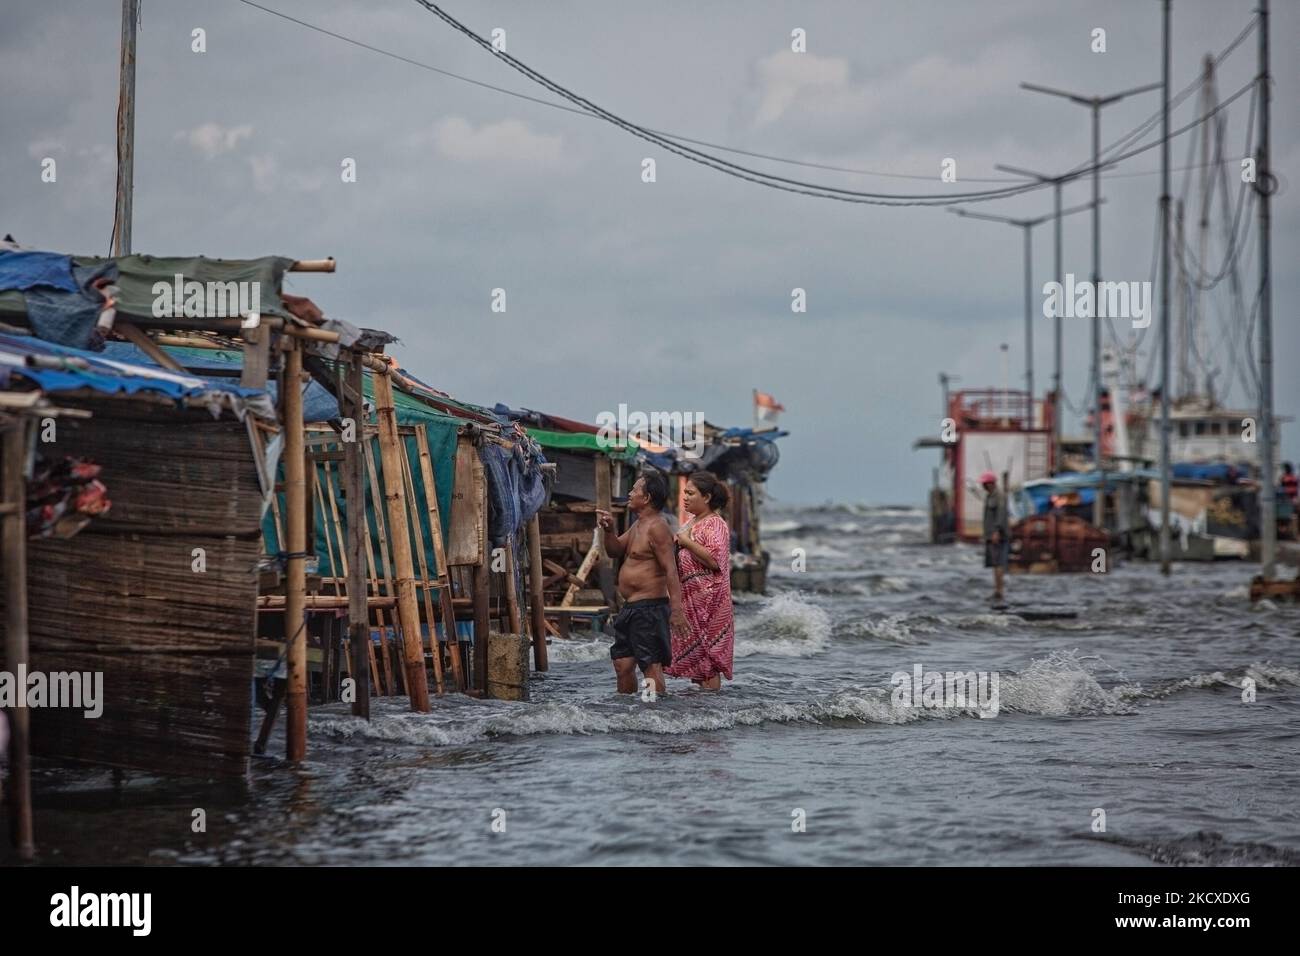 Les résidents passent par une cabine de nourriture endommagée par les vagues de marée dans la zone côtière de Jakarta, Muara Angke, le 7 décembre 2021. Les autorités locales ont prédit que des marées et des vents violents frapperont la région de la baie de Jakarta et le nord de W. Java du 6 au 9 décembre, ce qui provoquerait l'immersion de la zone côtière de la capitale et endommagera les maisons. Les inondations causées par le débordement d'eau de mer ont submergé 15 unités de quartier dans le nord de Jakarta et l'ouest de Jakarta. (Photo par Afriadi Hikmal/NurPhoto) Banque D'Images